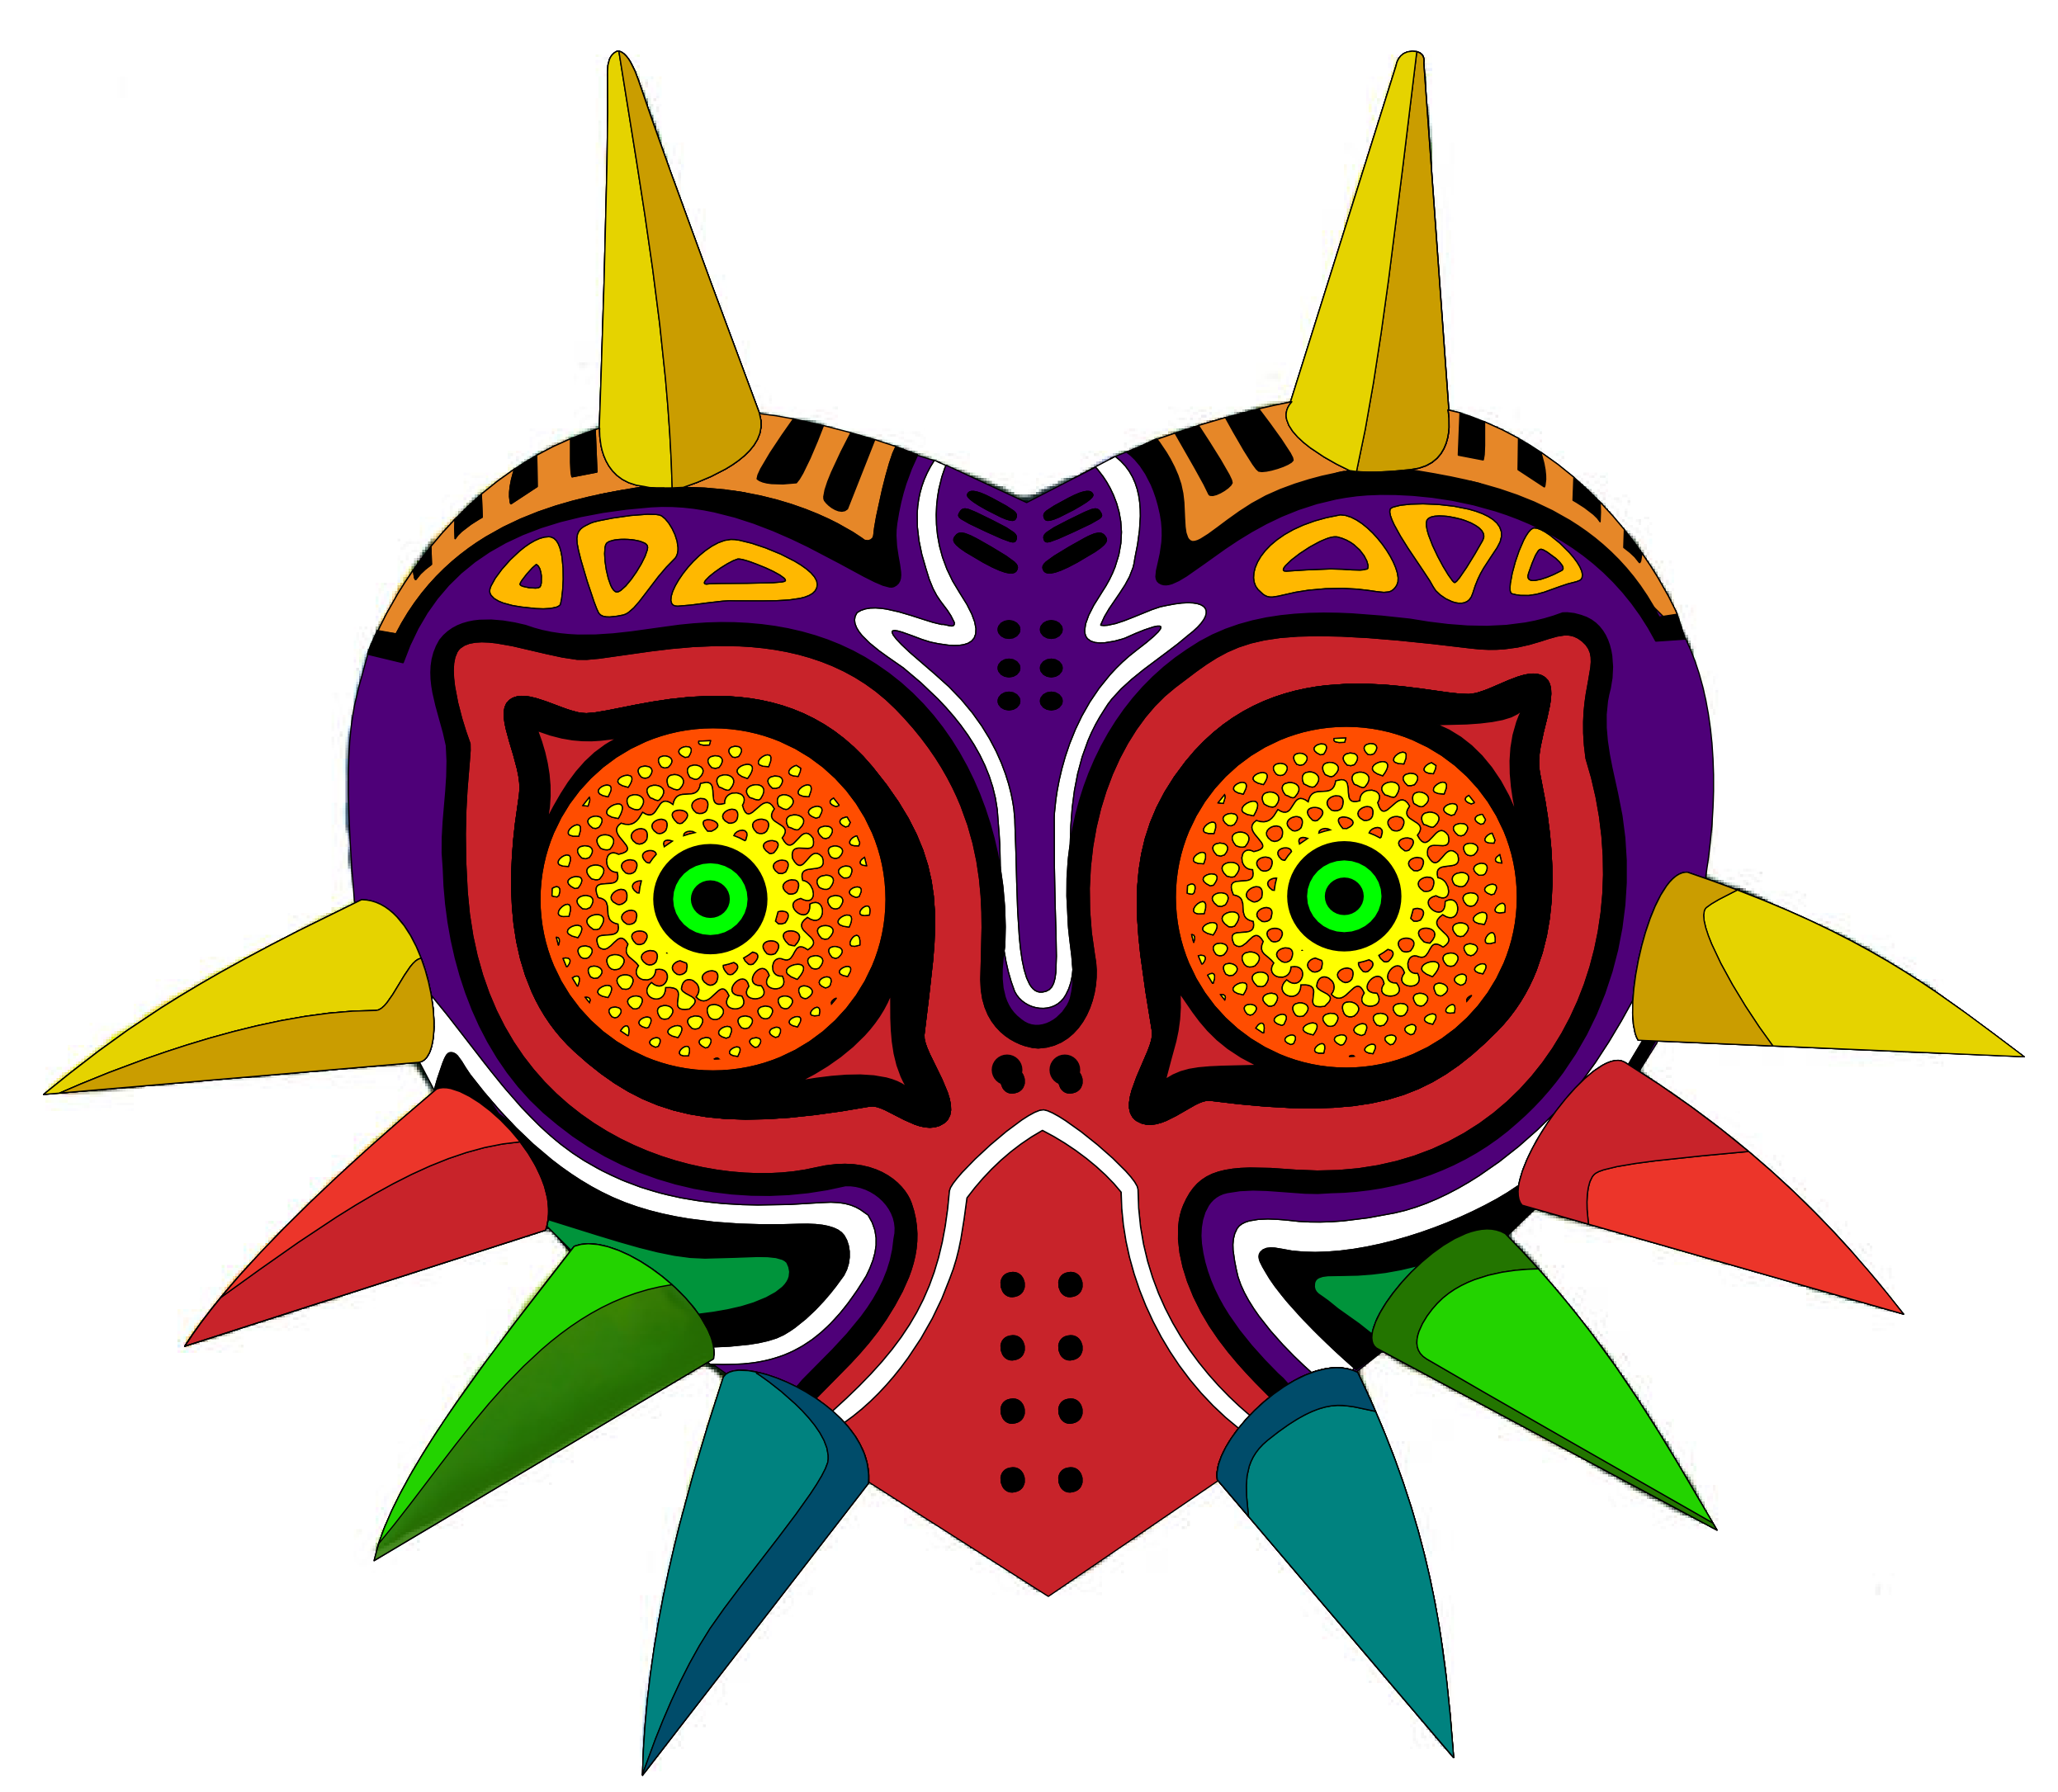 Majora's Mask by RevPixy on DeviantArt.